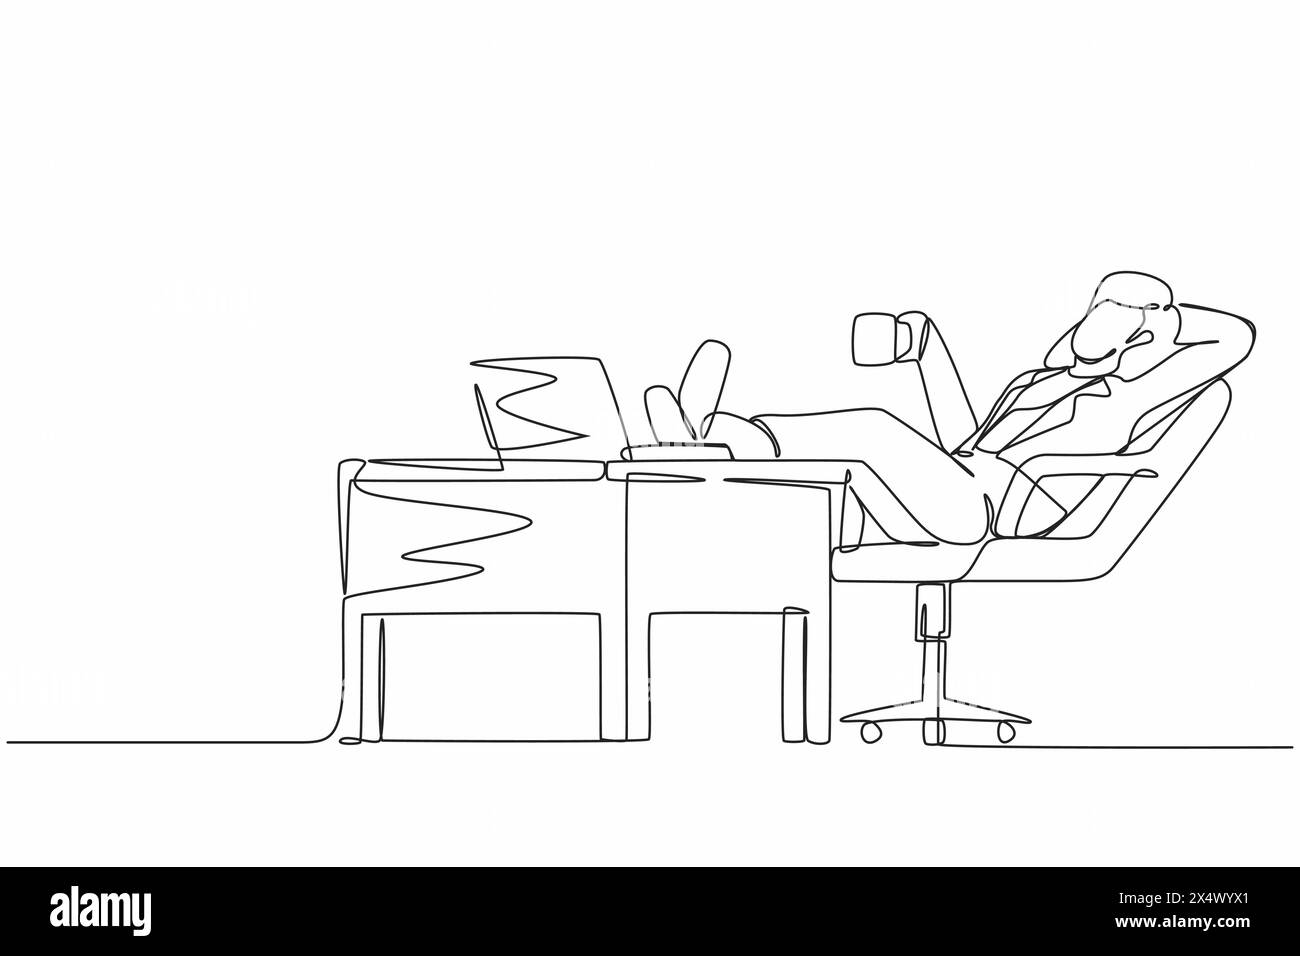 Eine Geschäftsfrau mit durchgehender Linienzeichnung arbeitet entspannt am Schreibtisch und trinkt eine Tasse Kaffee. Flaches Design der Mitarbeiterfigur, die mit Laptop-Compu arbeitet Stock Vektor